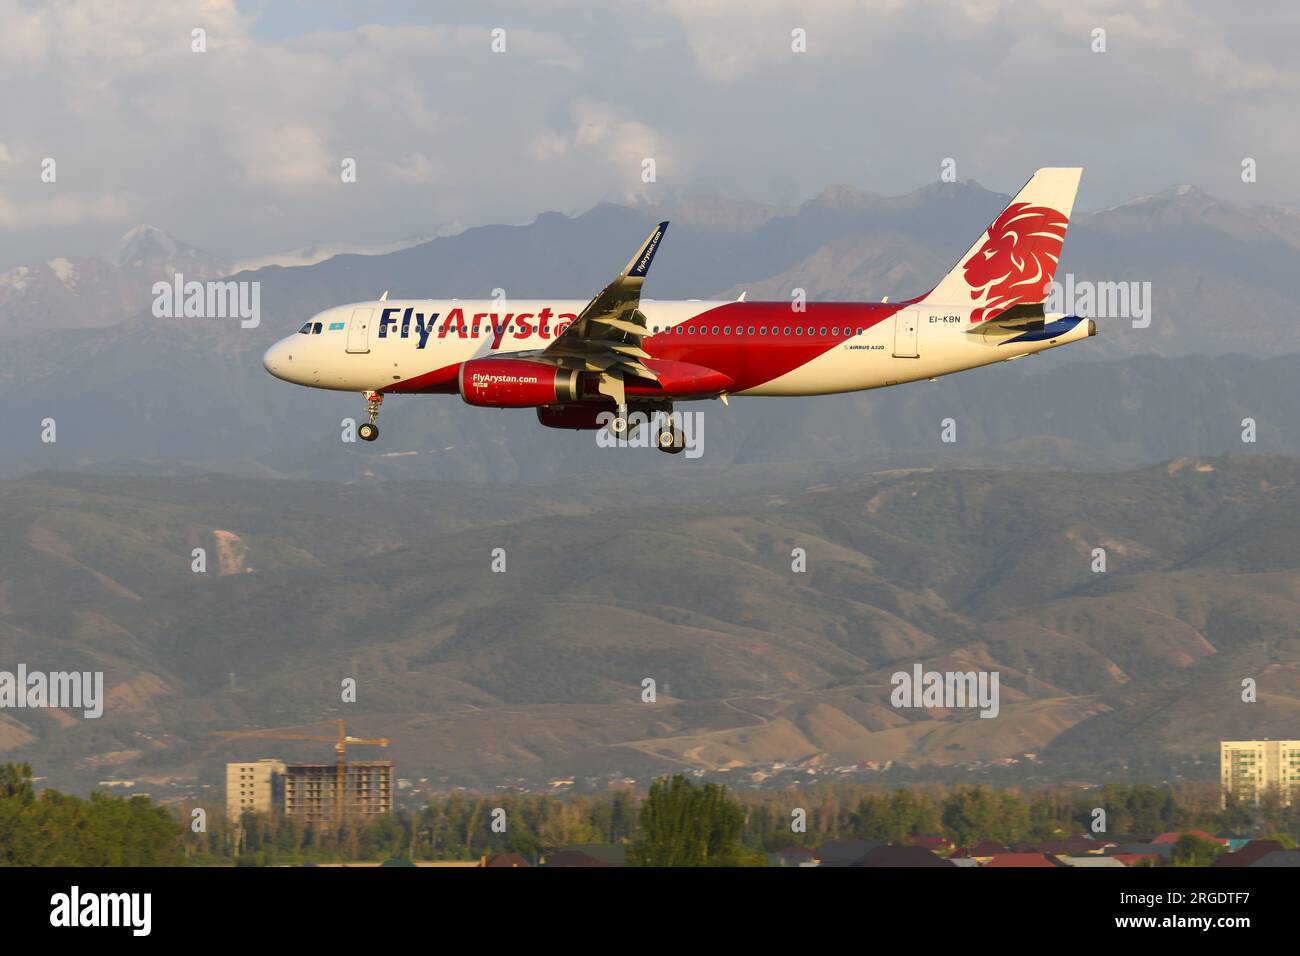 Voler Arystan Airbus A320 avion sur le point d'atterrir à l'aéroport d'Almaty au Kazakhstan. Avion A320 de FlyArystan. Avion EI-KBN. Banque D'Images